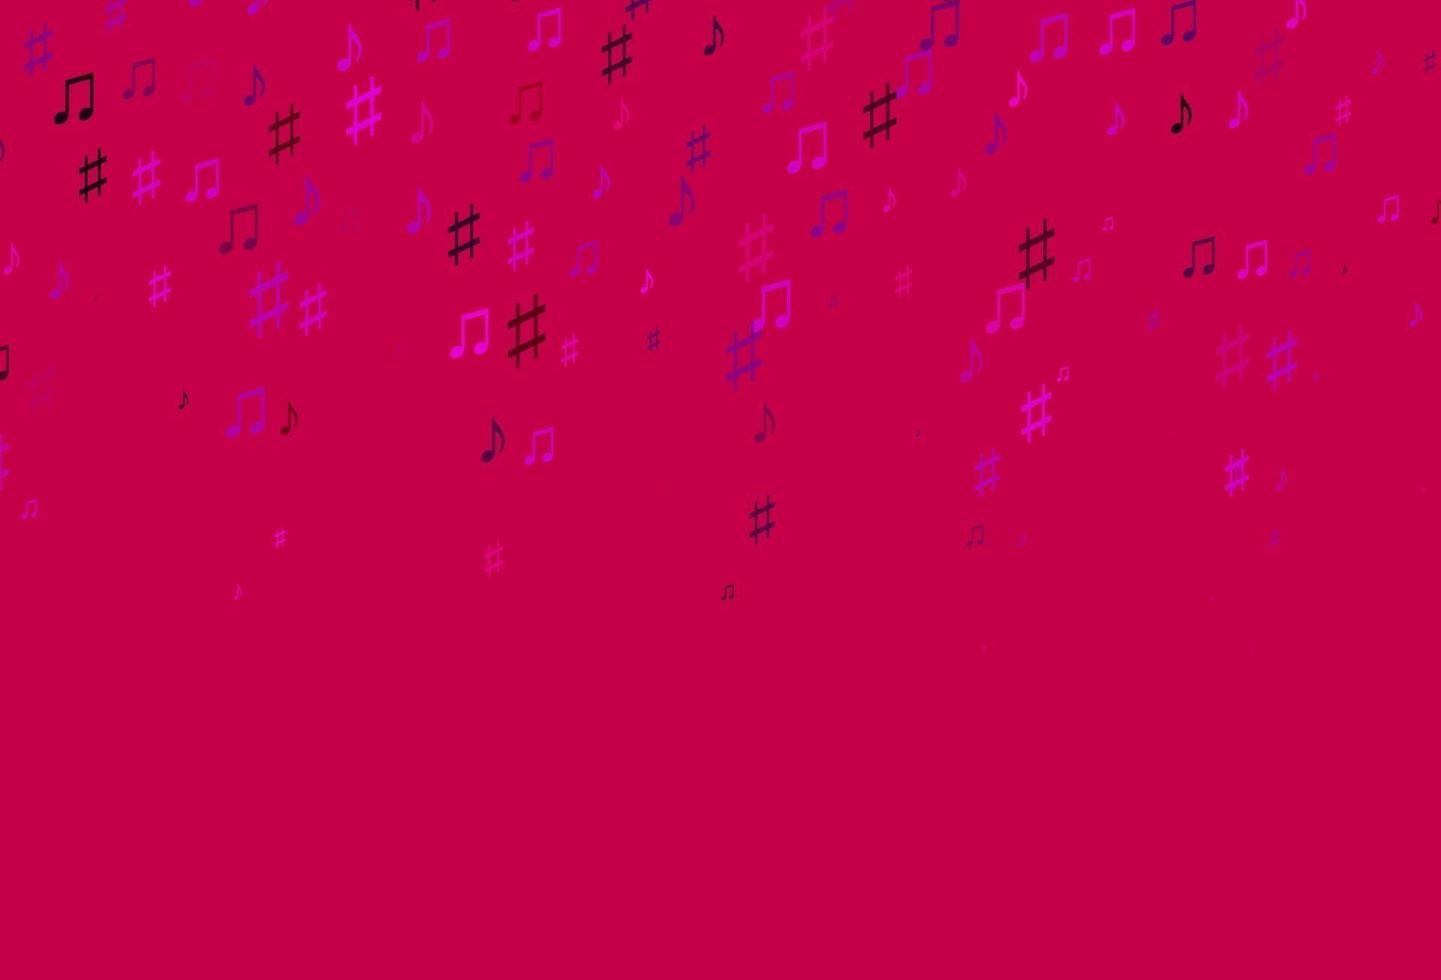 ljuslila, rosa vektormönster med musikelement. vektor